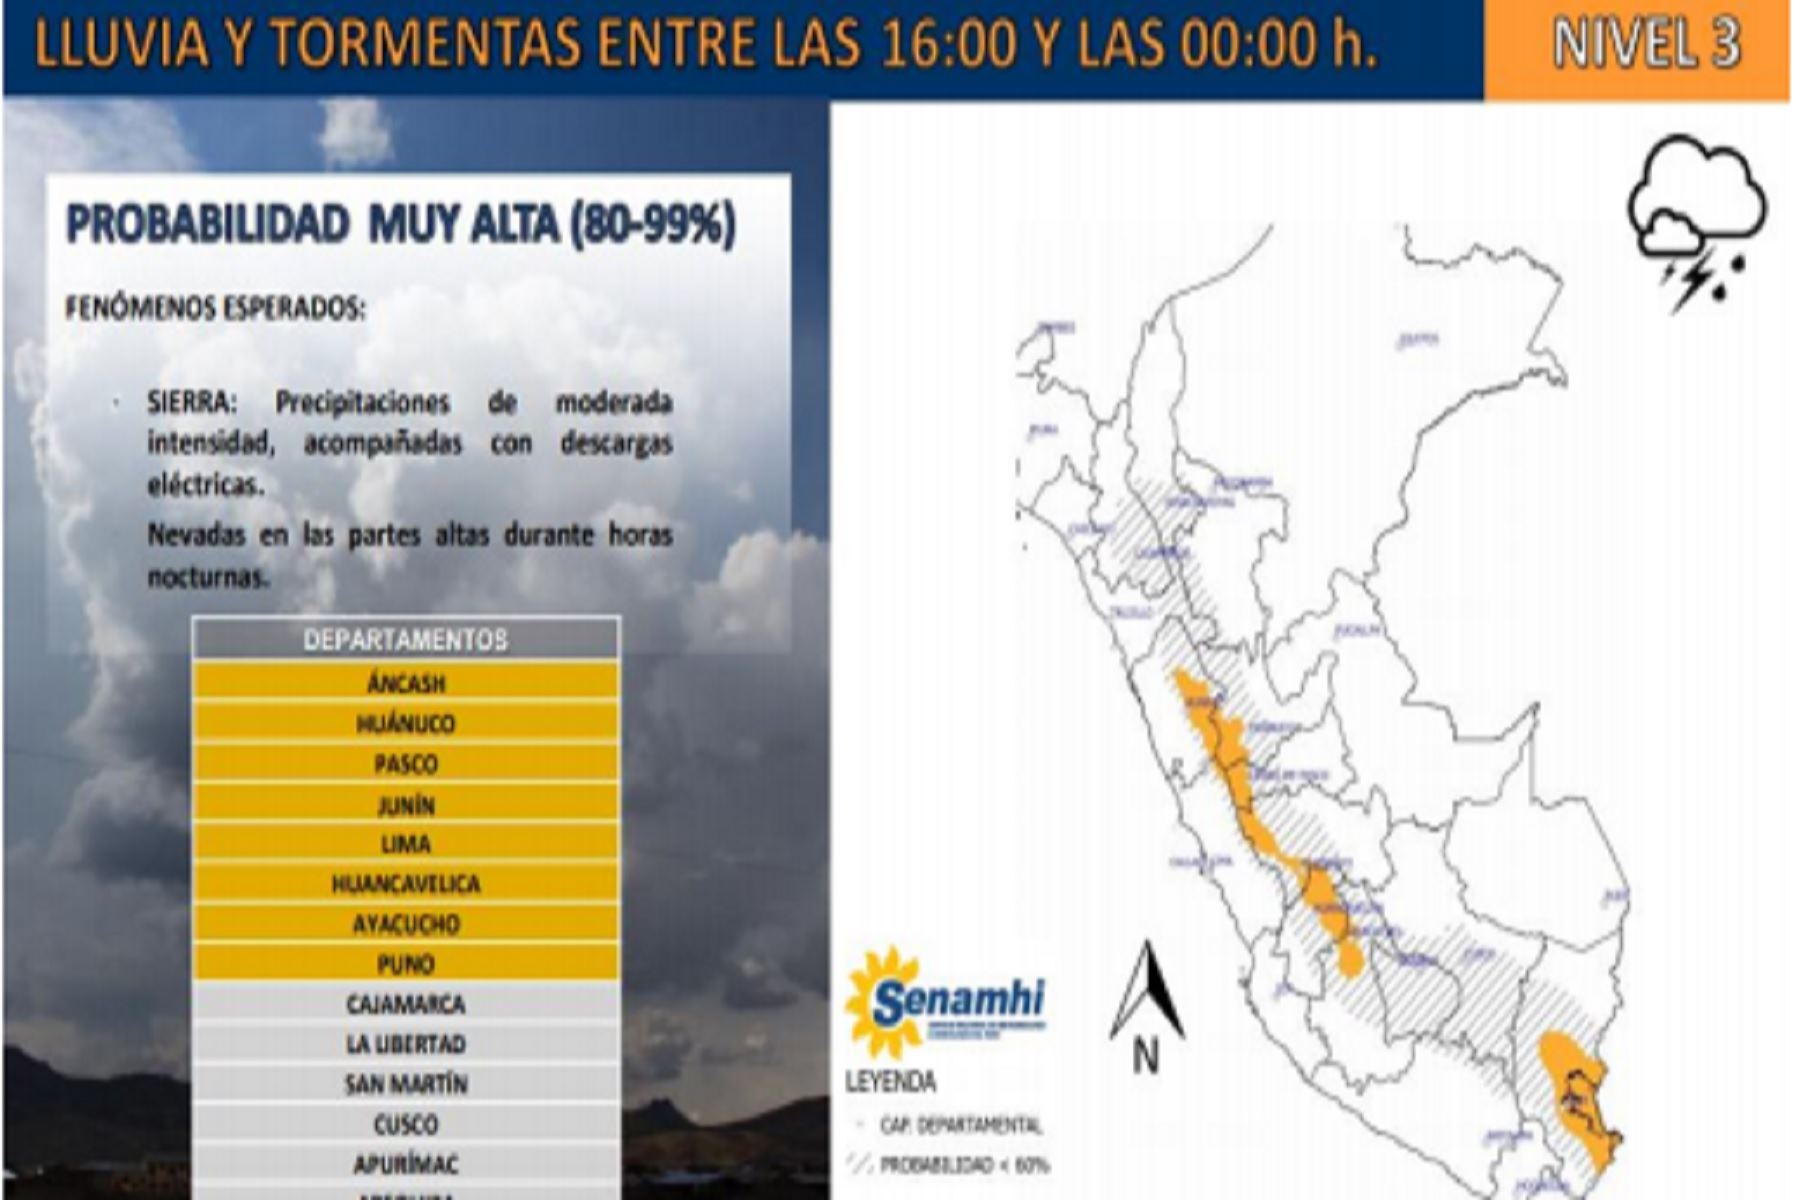 Lluvias moderadas afectarían a los departamentos de Áncash, Huánuco, Lima, Pasco, Ayacucho, Junín, Huancavelica y Cusco.